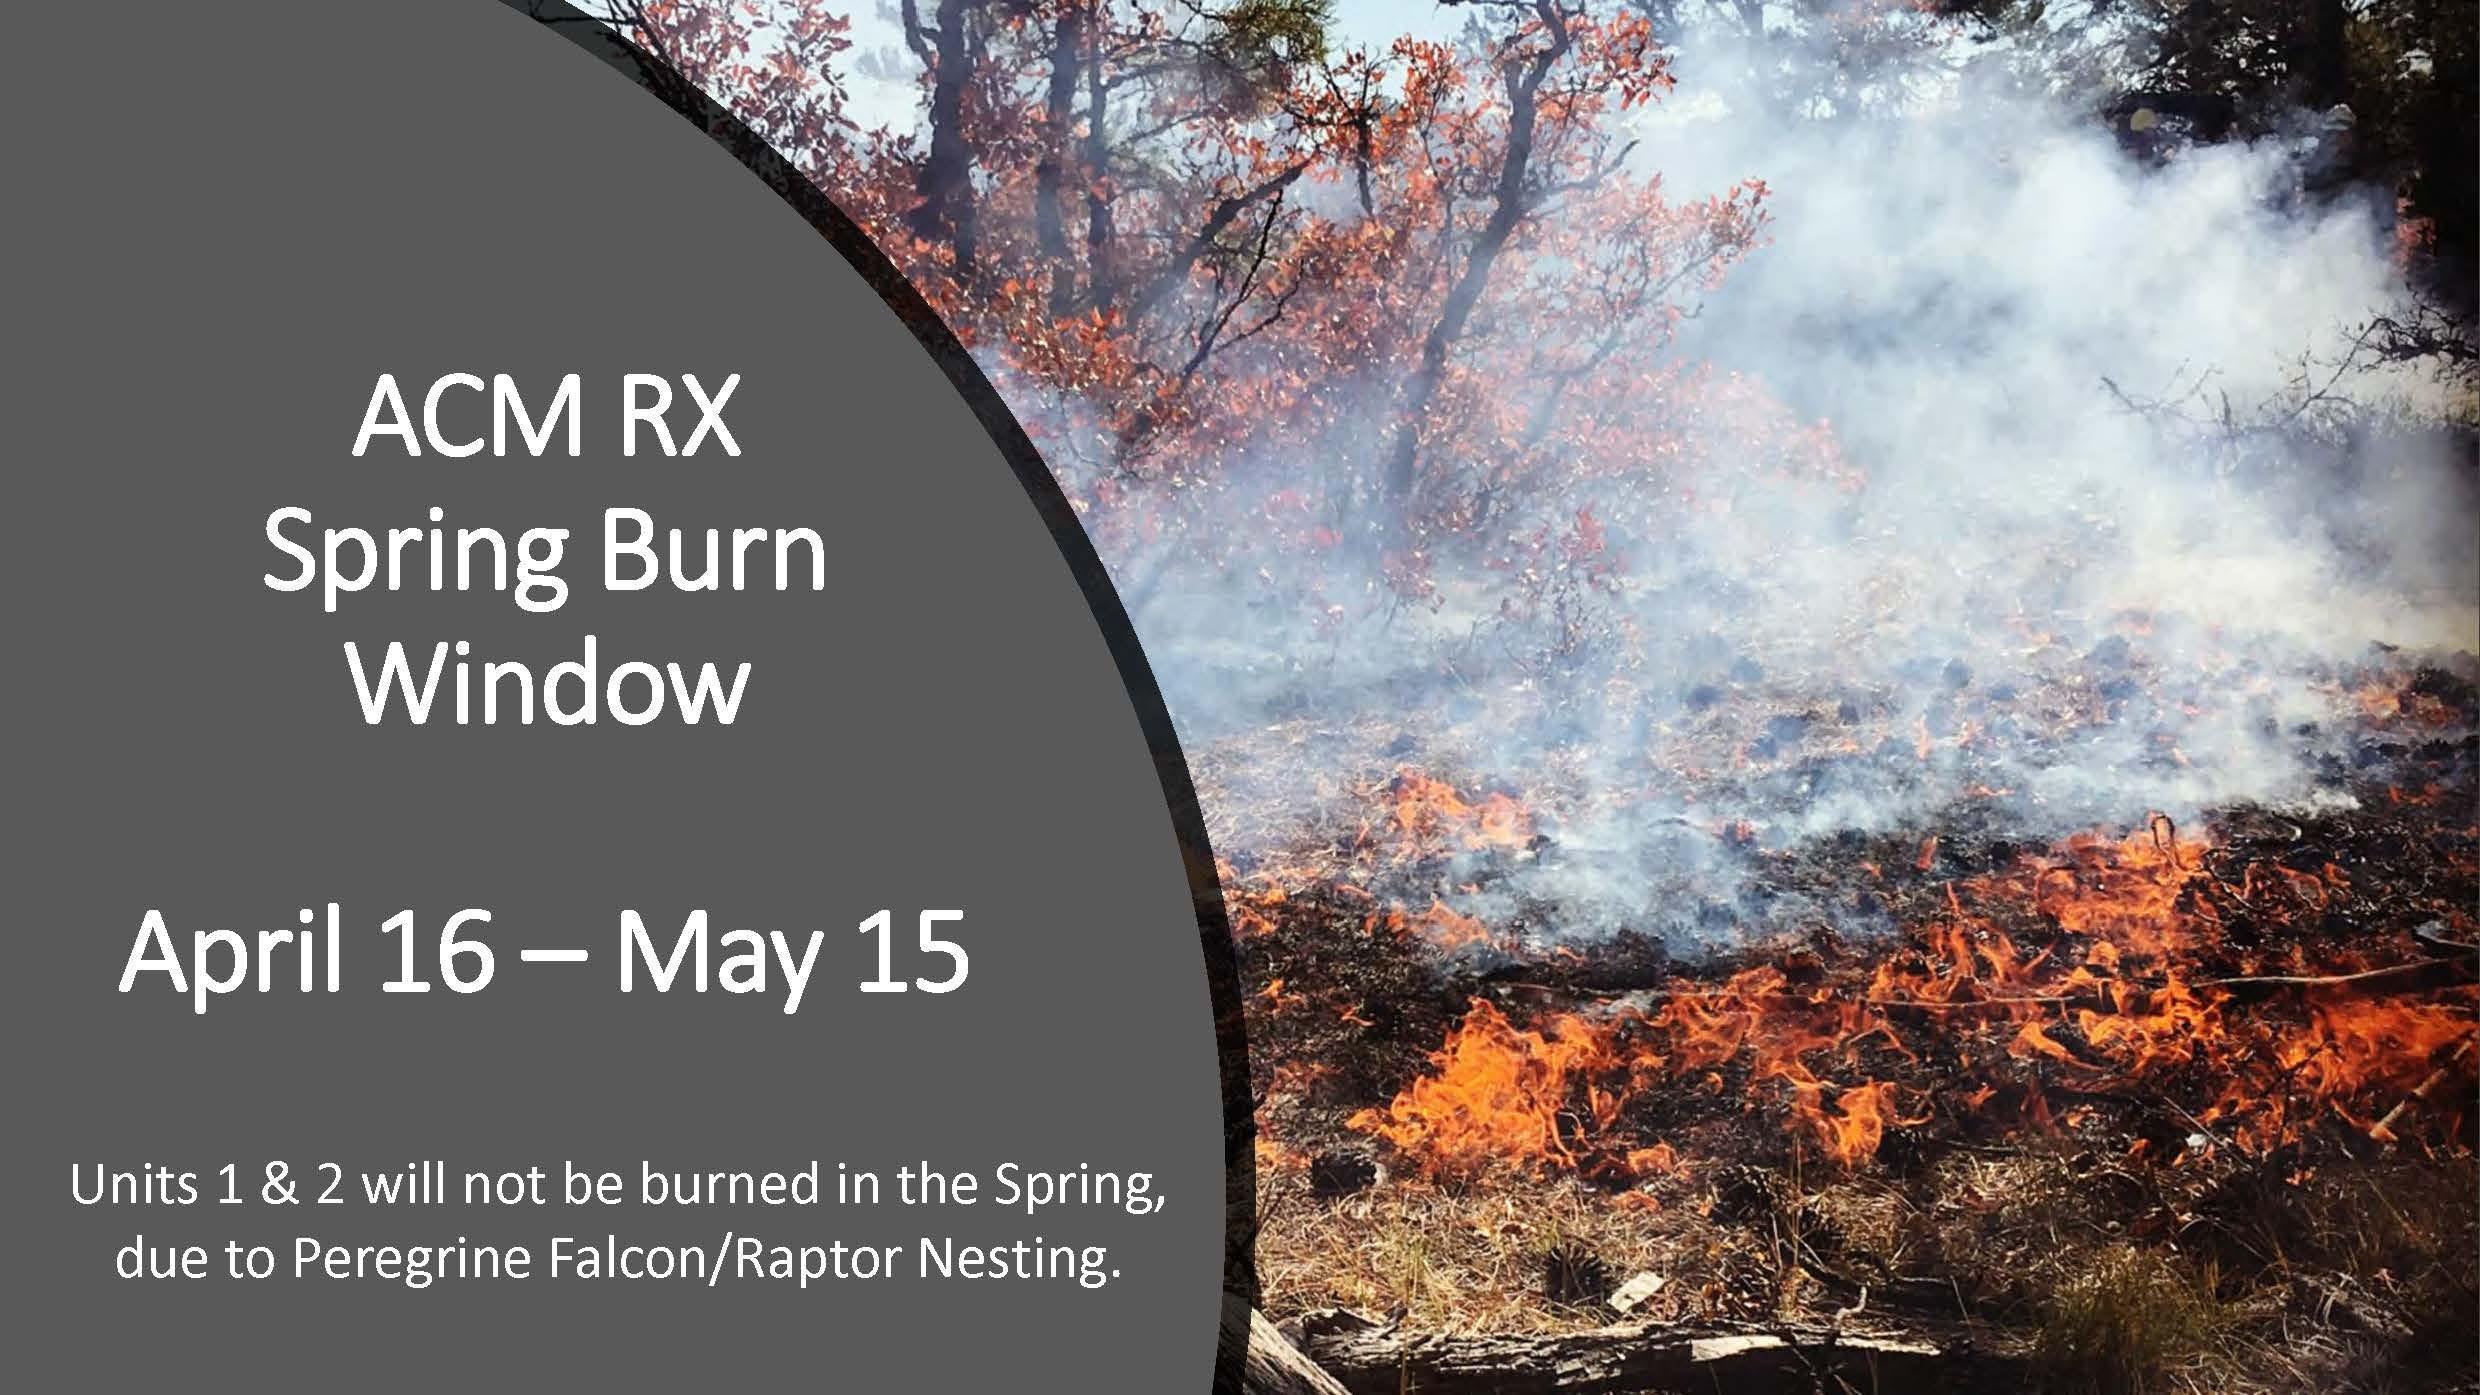 ACM RX Spring Burn Window Dates